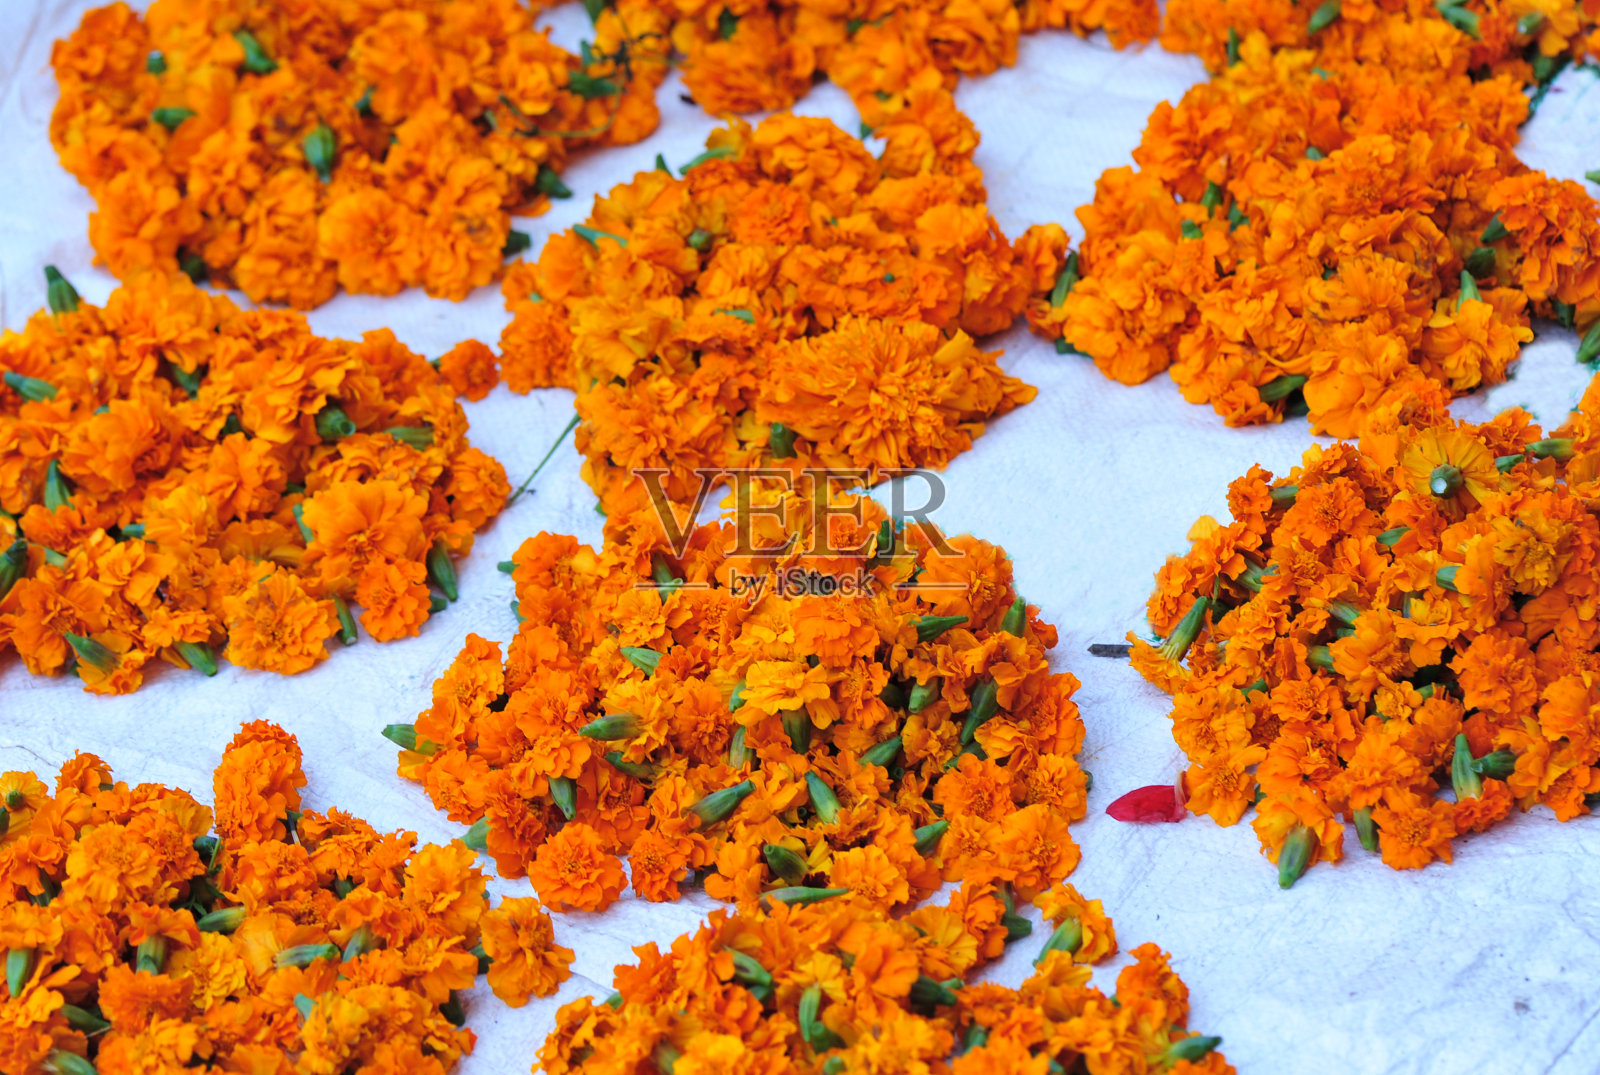 尼泊尔市场上出售的鲜花照片摄影图片